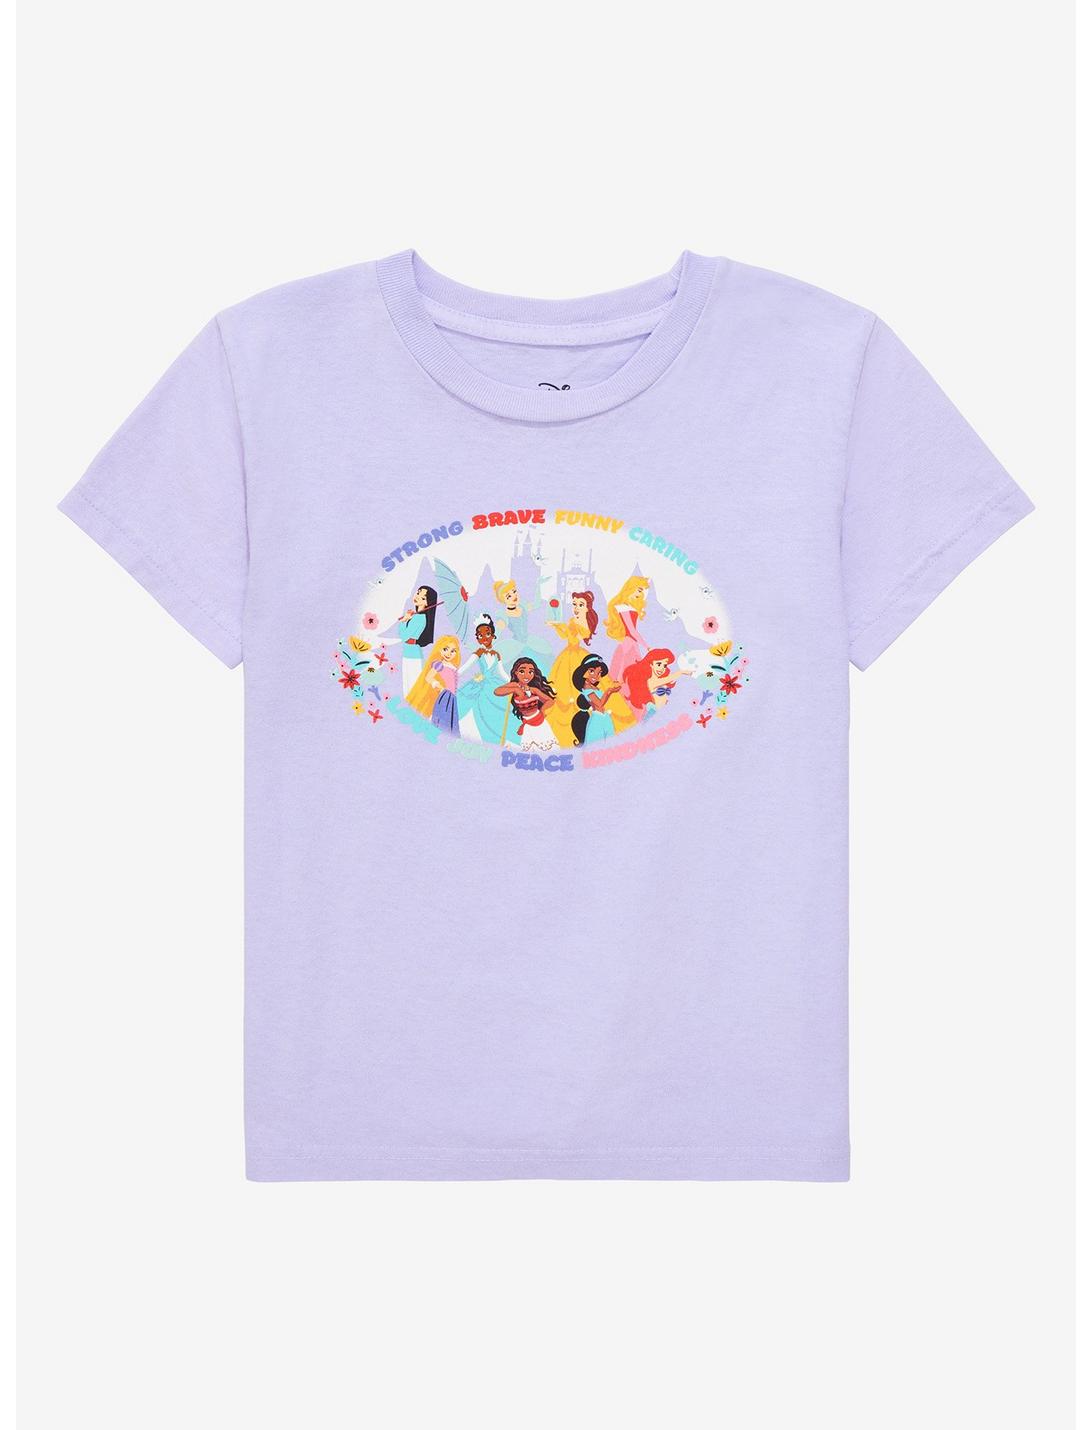 Disney Princess Group Portrait Traits Toddler T-Shirt - BoxLunch Exclusive, PURPLE, hi-res